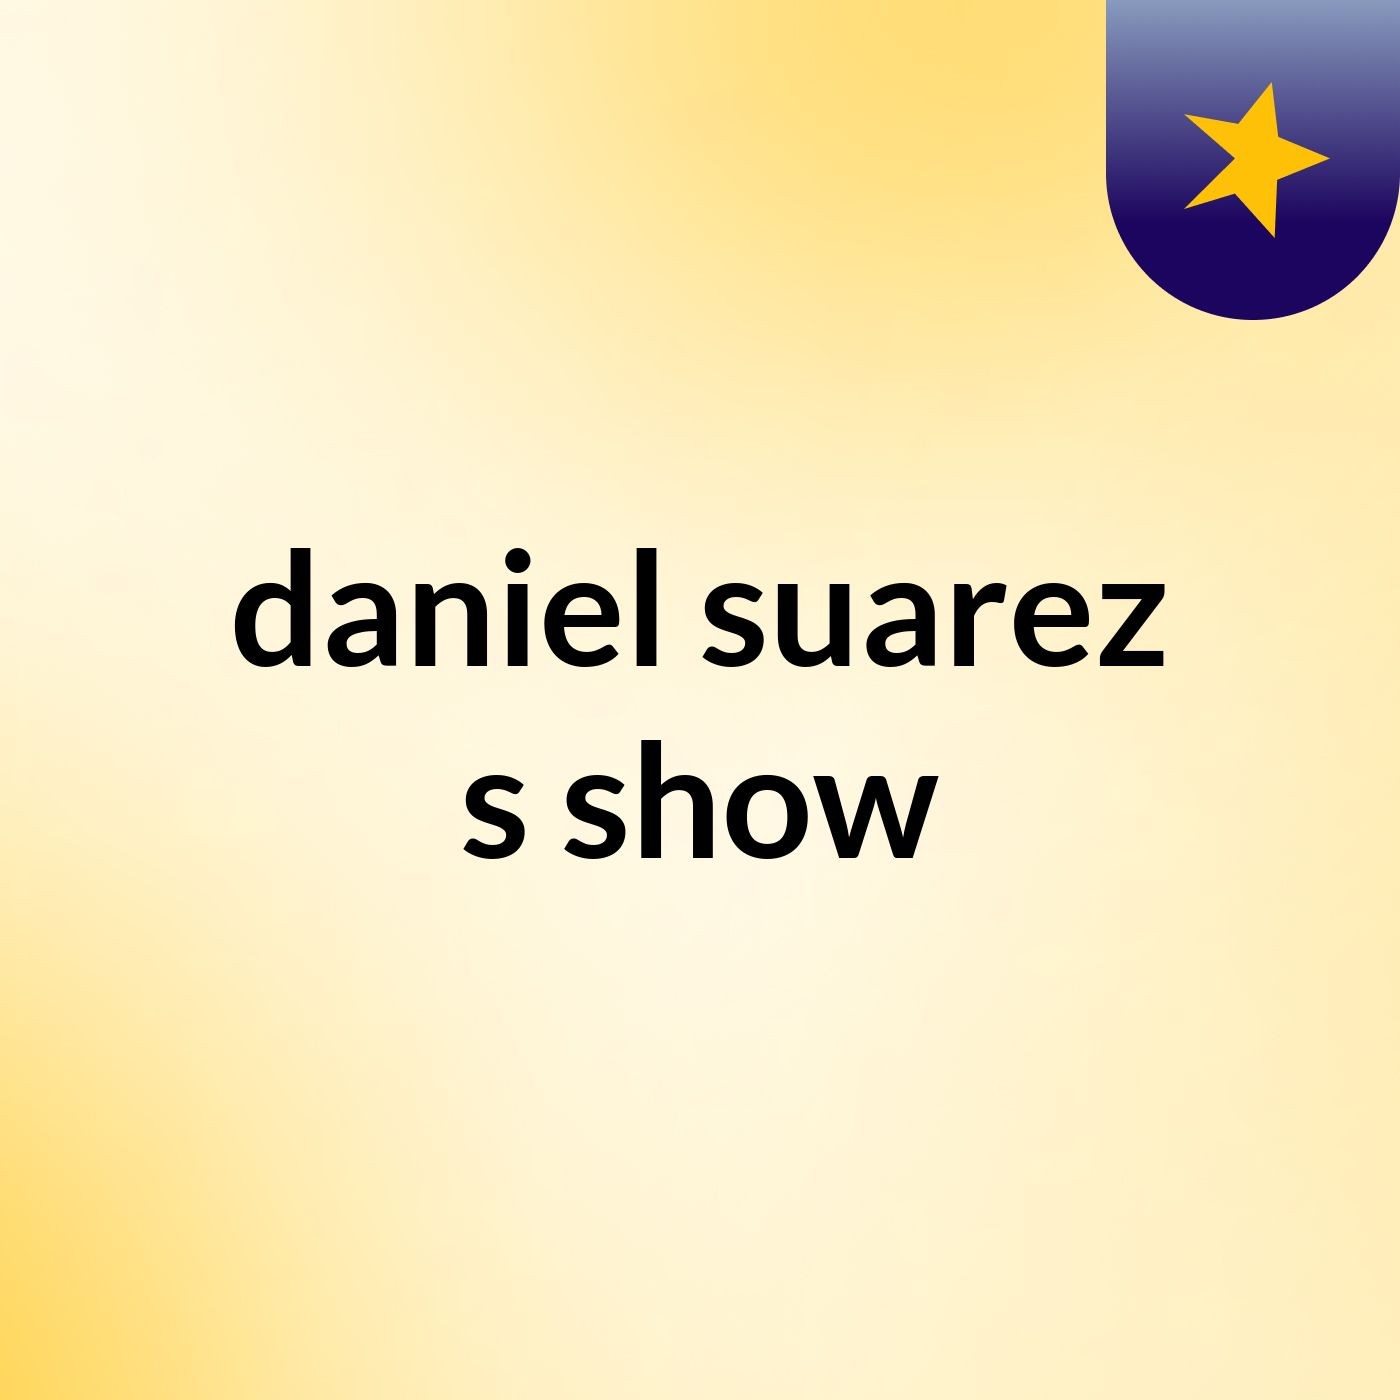 daniel suarez's show